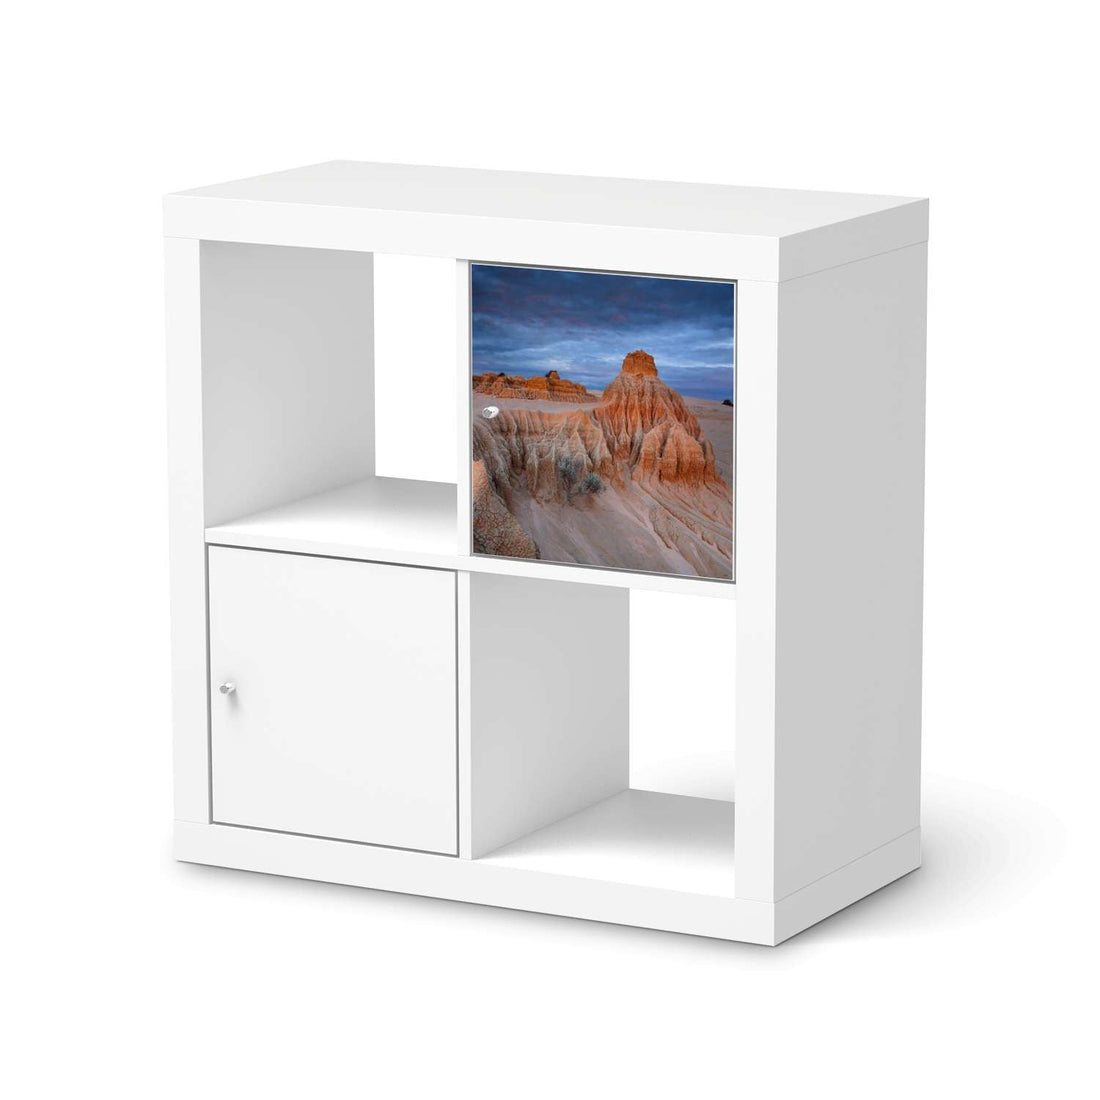 Selbstklebende Folie Outback Australia - IKEA Kallax Regal 1 Türe  - weiss